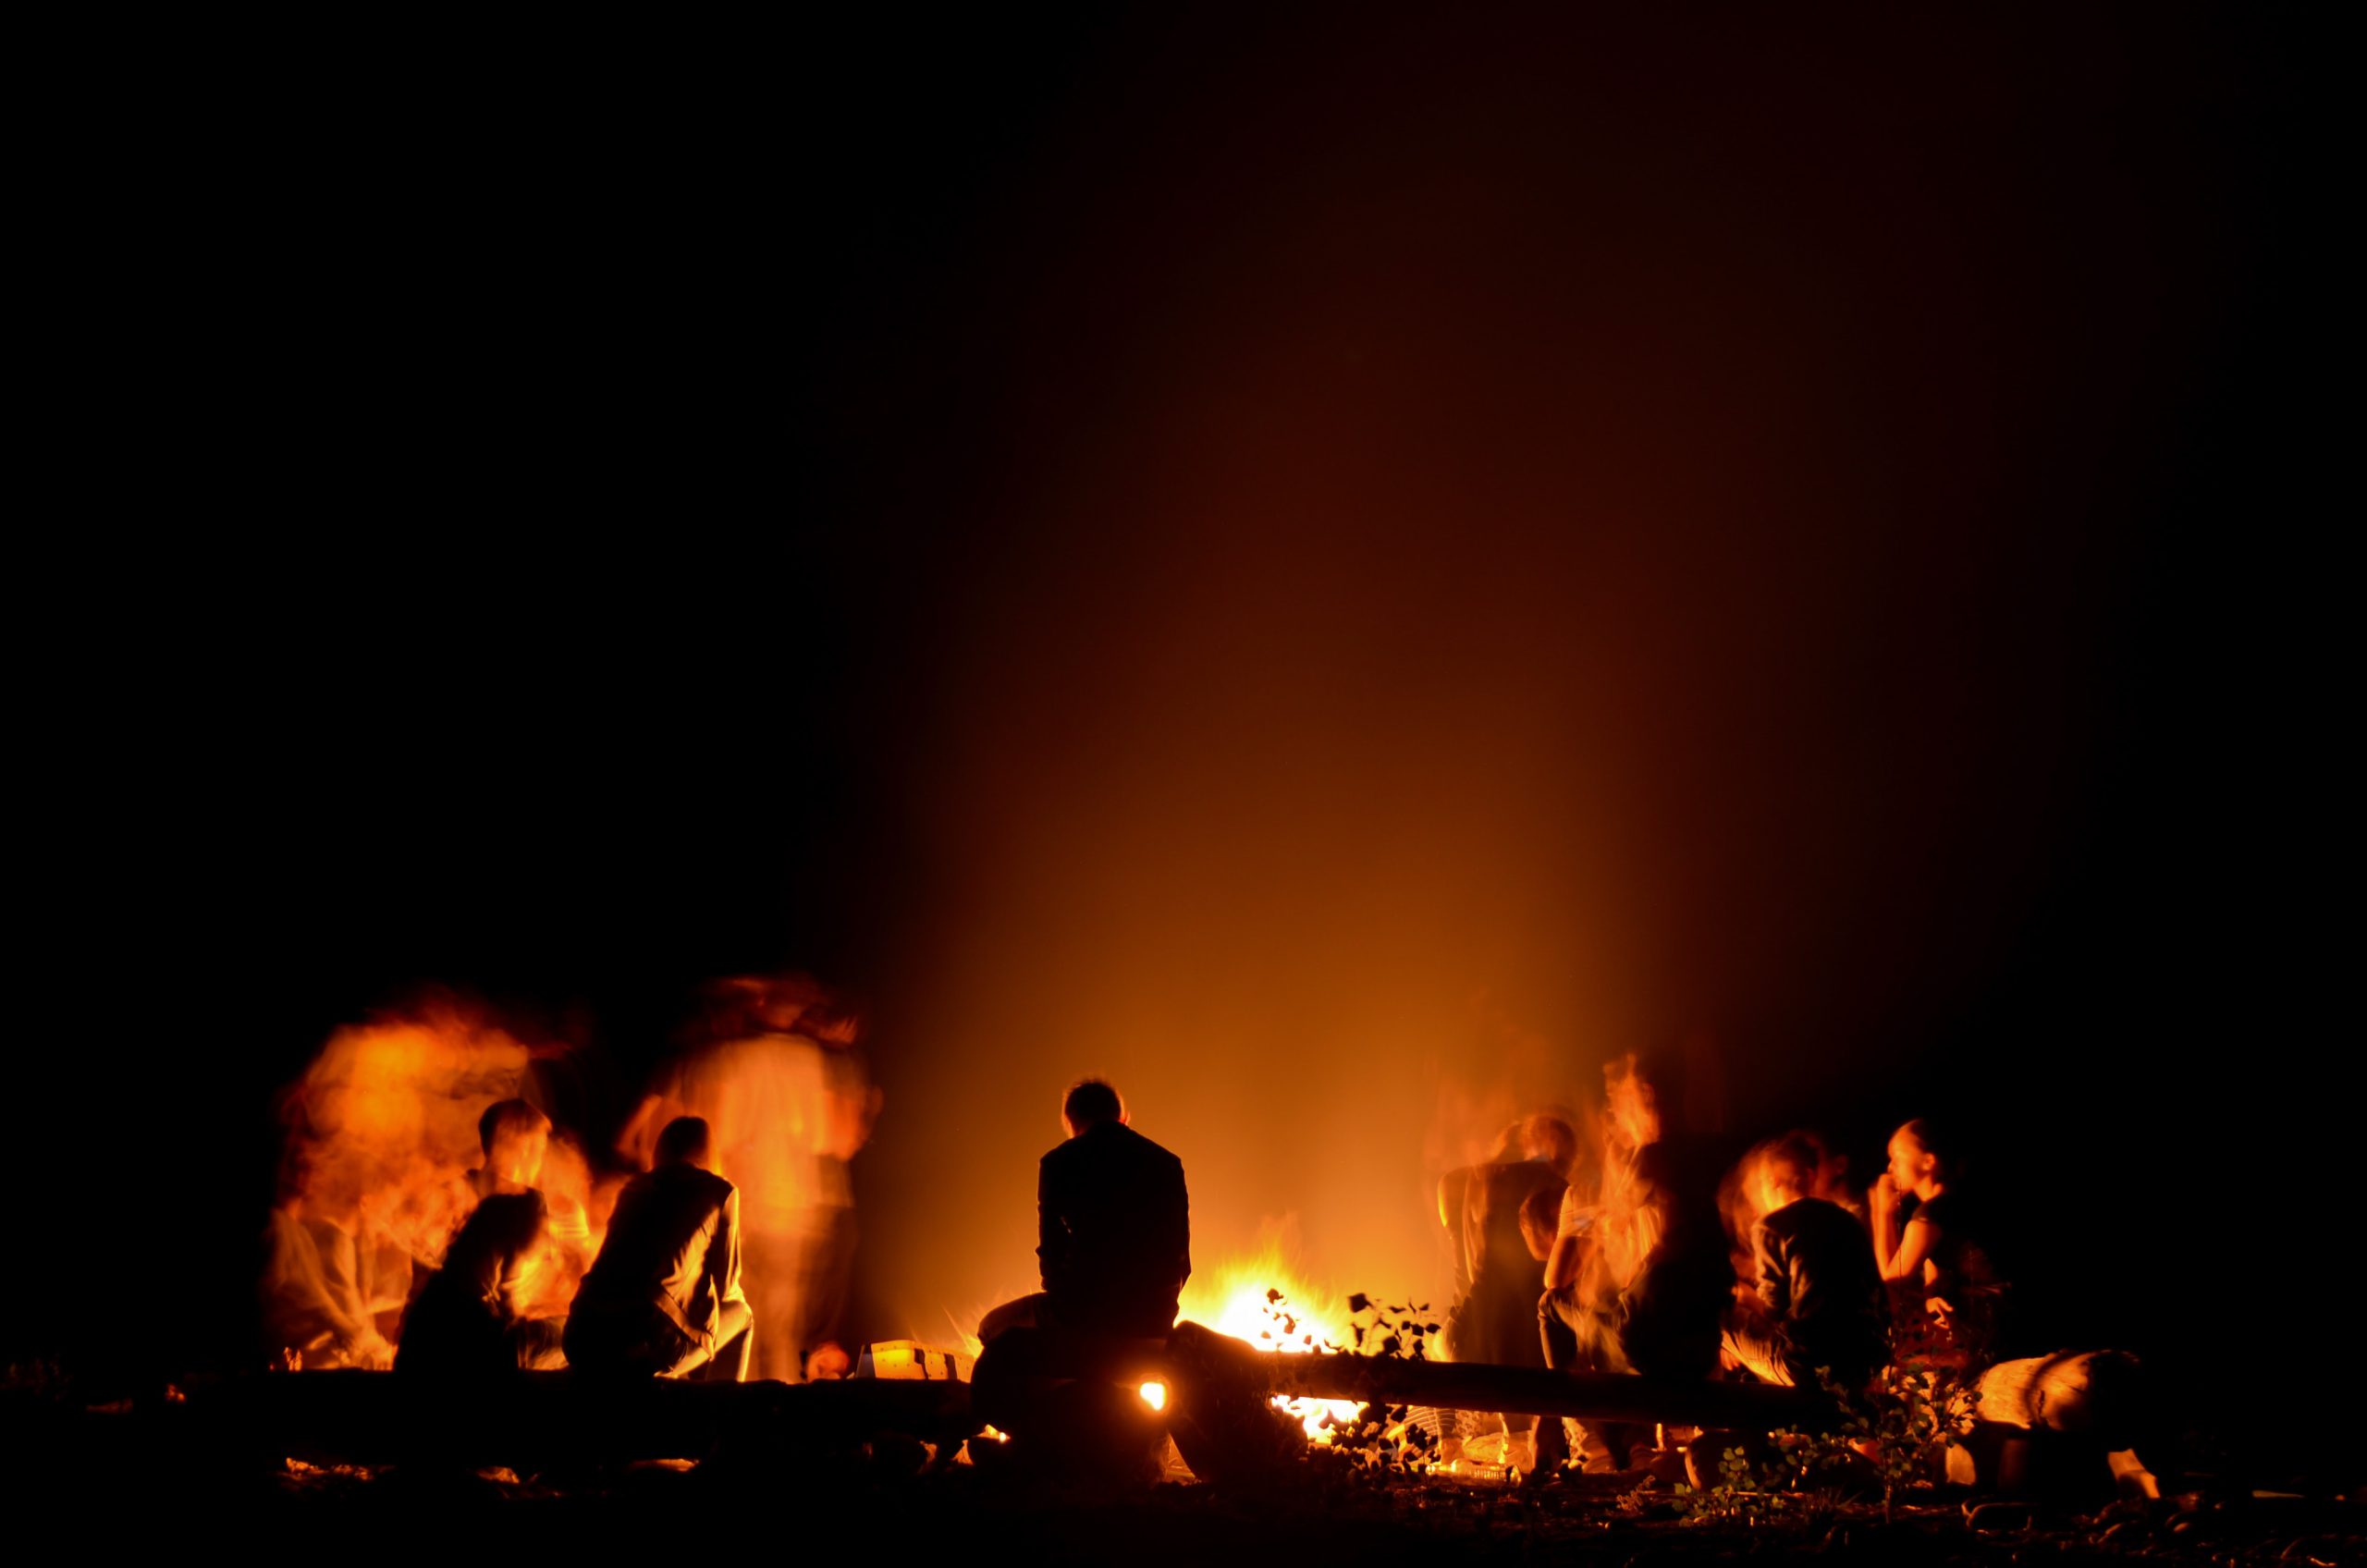 People around a campfire | Photo by Joris Voeten on Unsplash